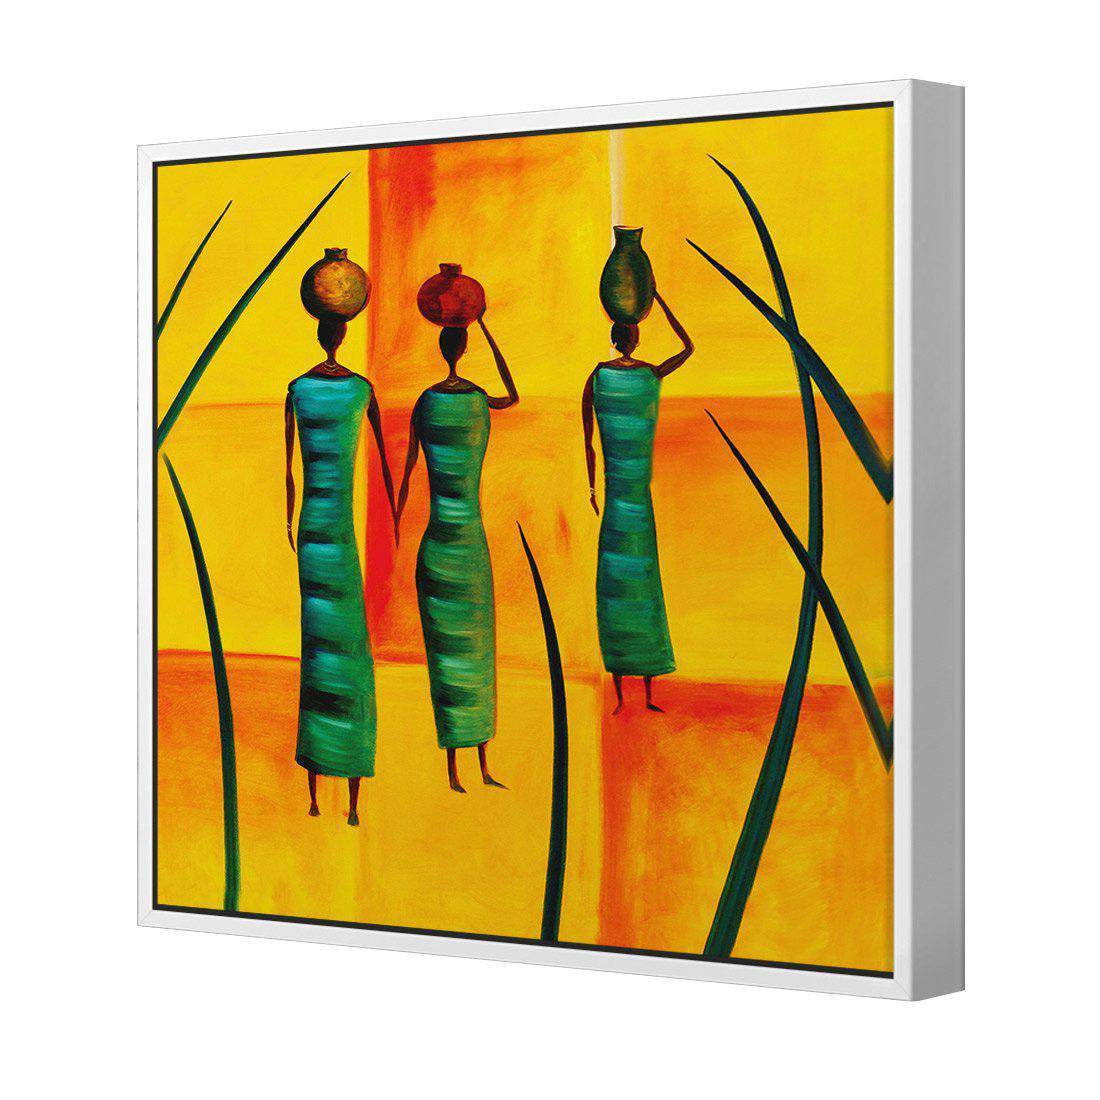 Three African Women Canvas Art-Canvas-Wall Art Designs-30x30cm-Canvas - White Frame-Wall Art Designs